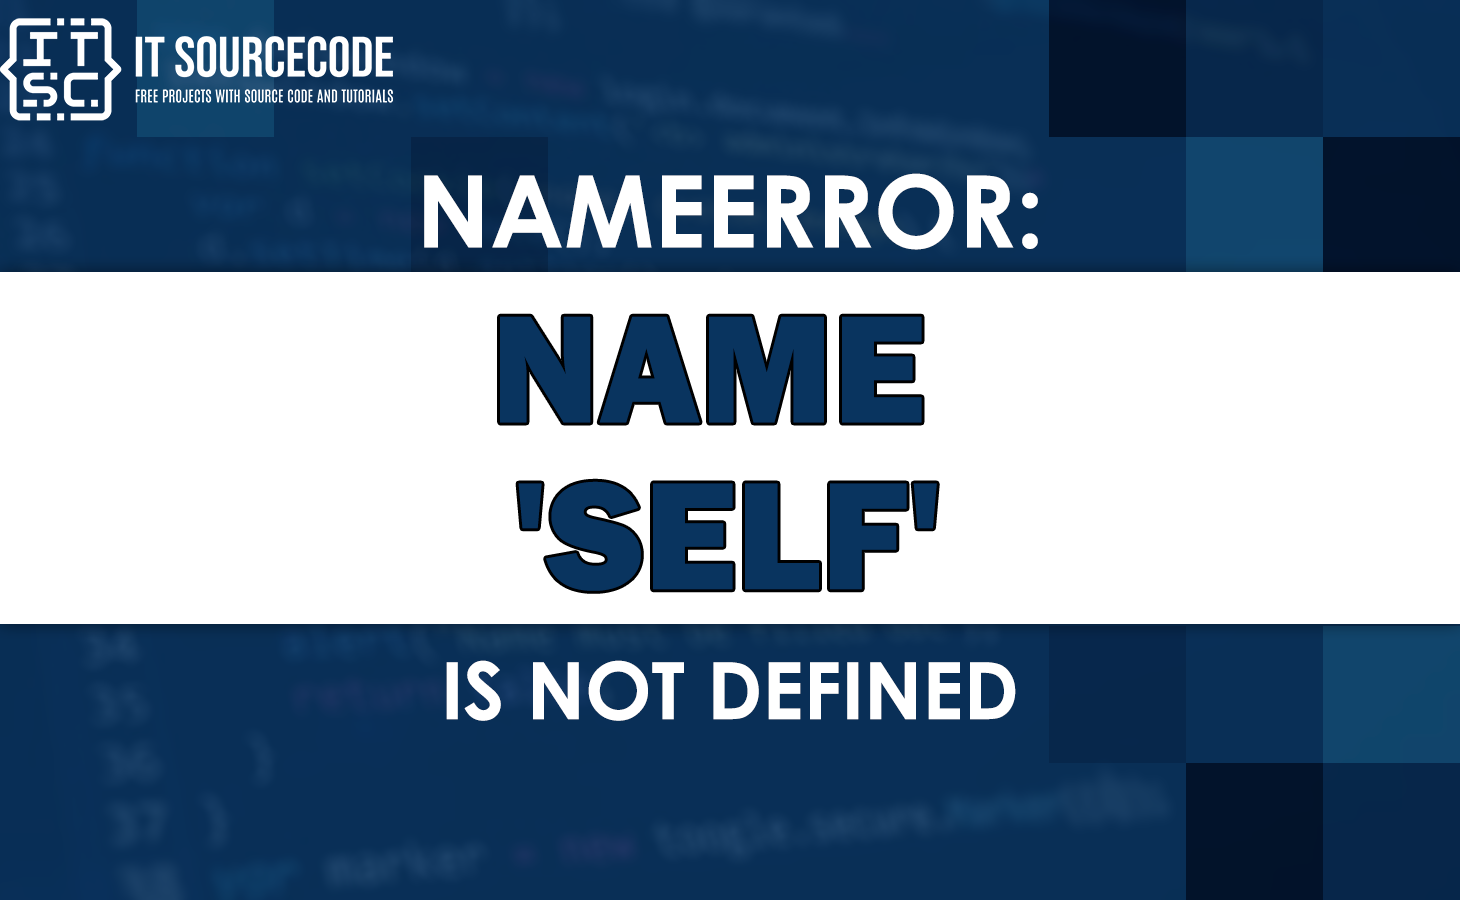 Nameerror: name self is not defined